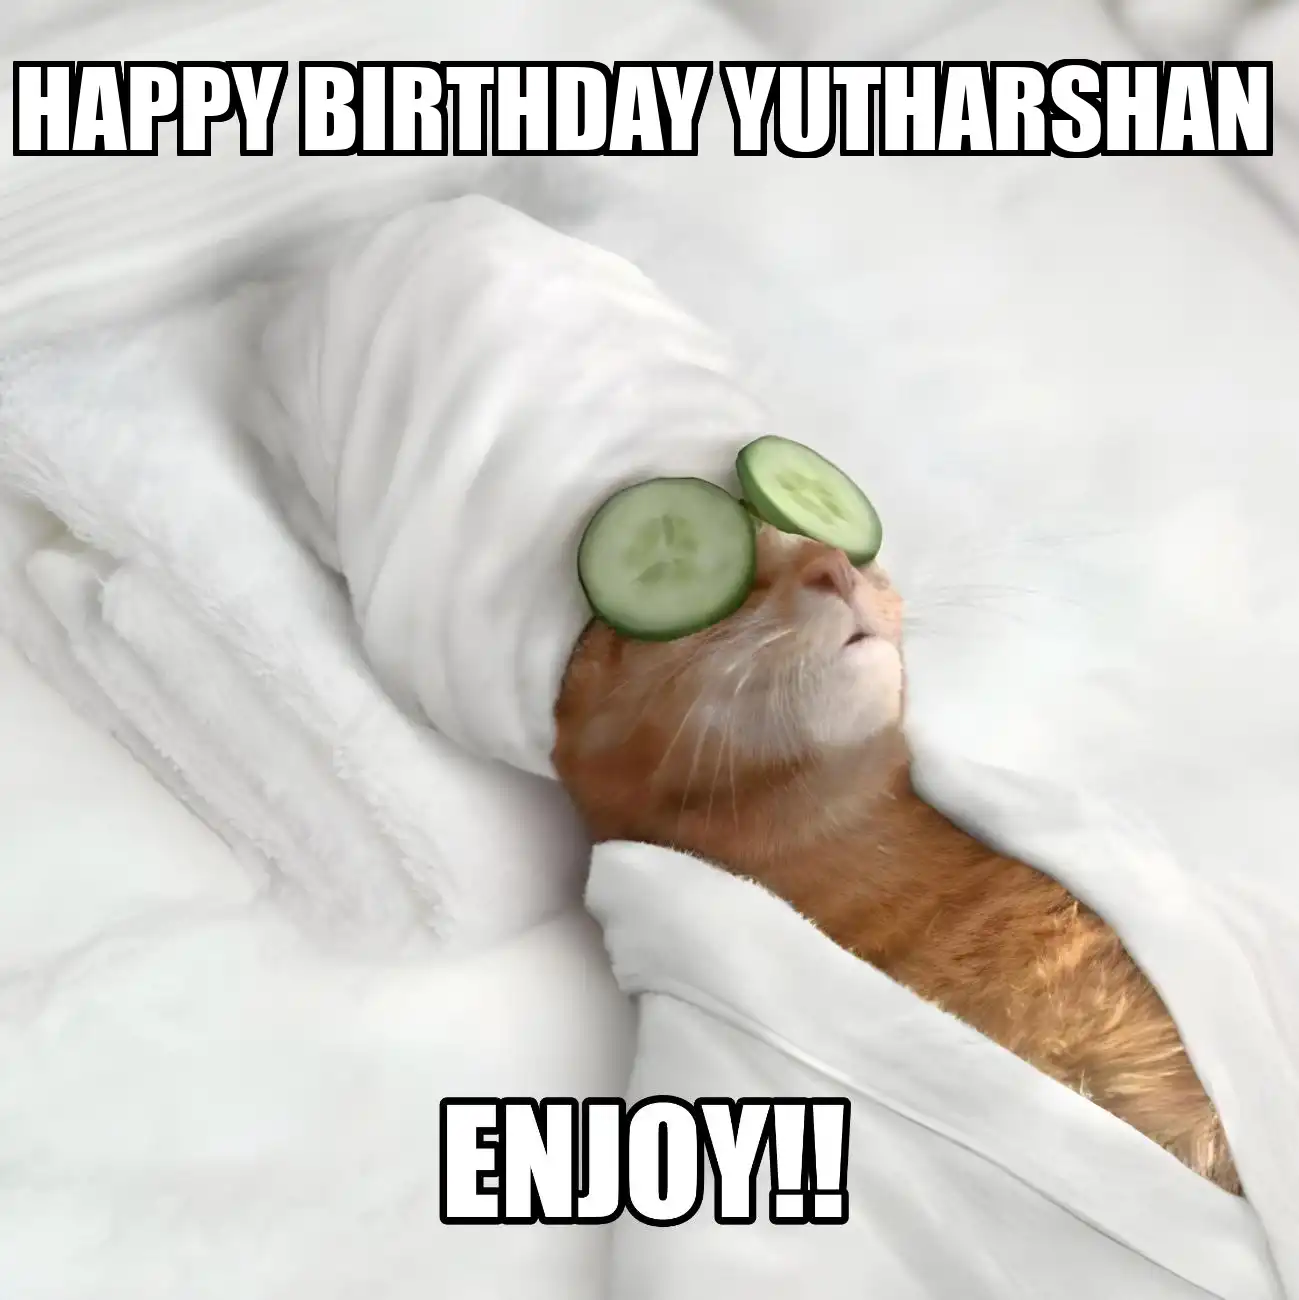 Happy Birthday Yutharshan Enjoy Cat Meme